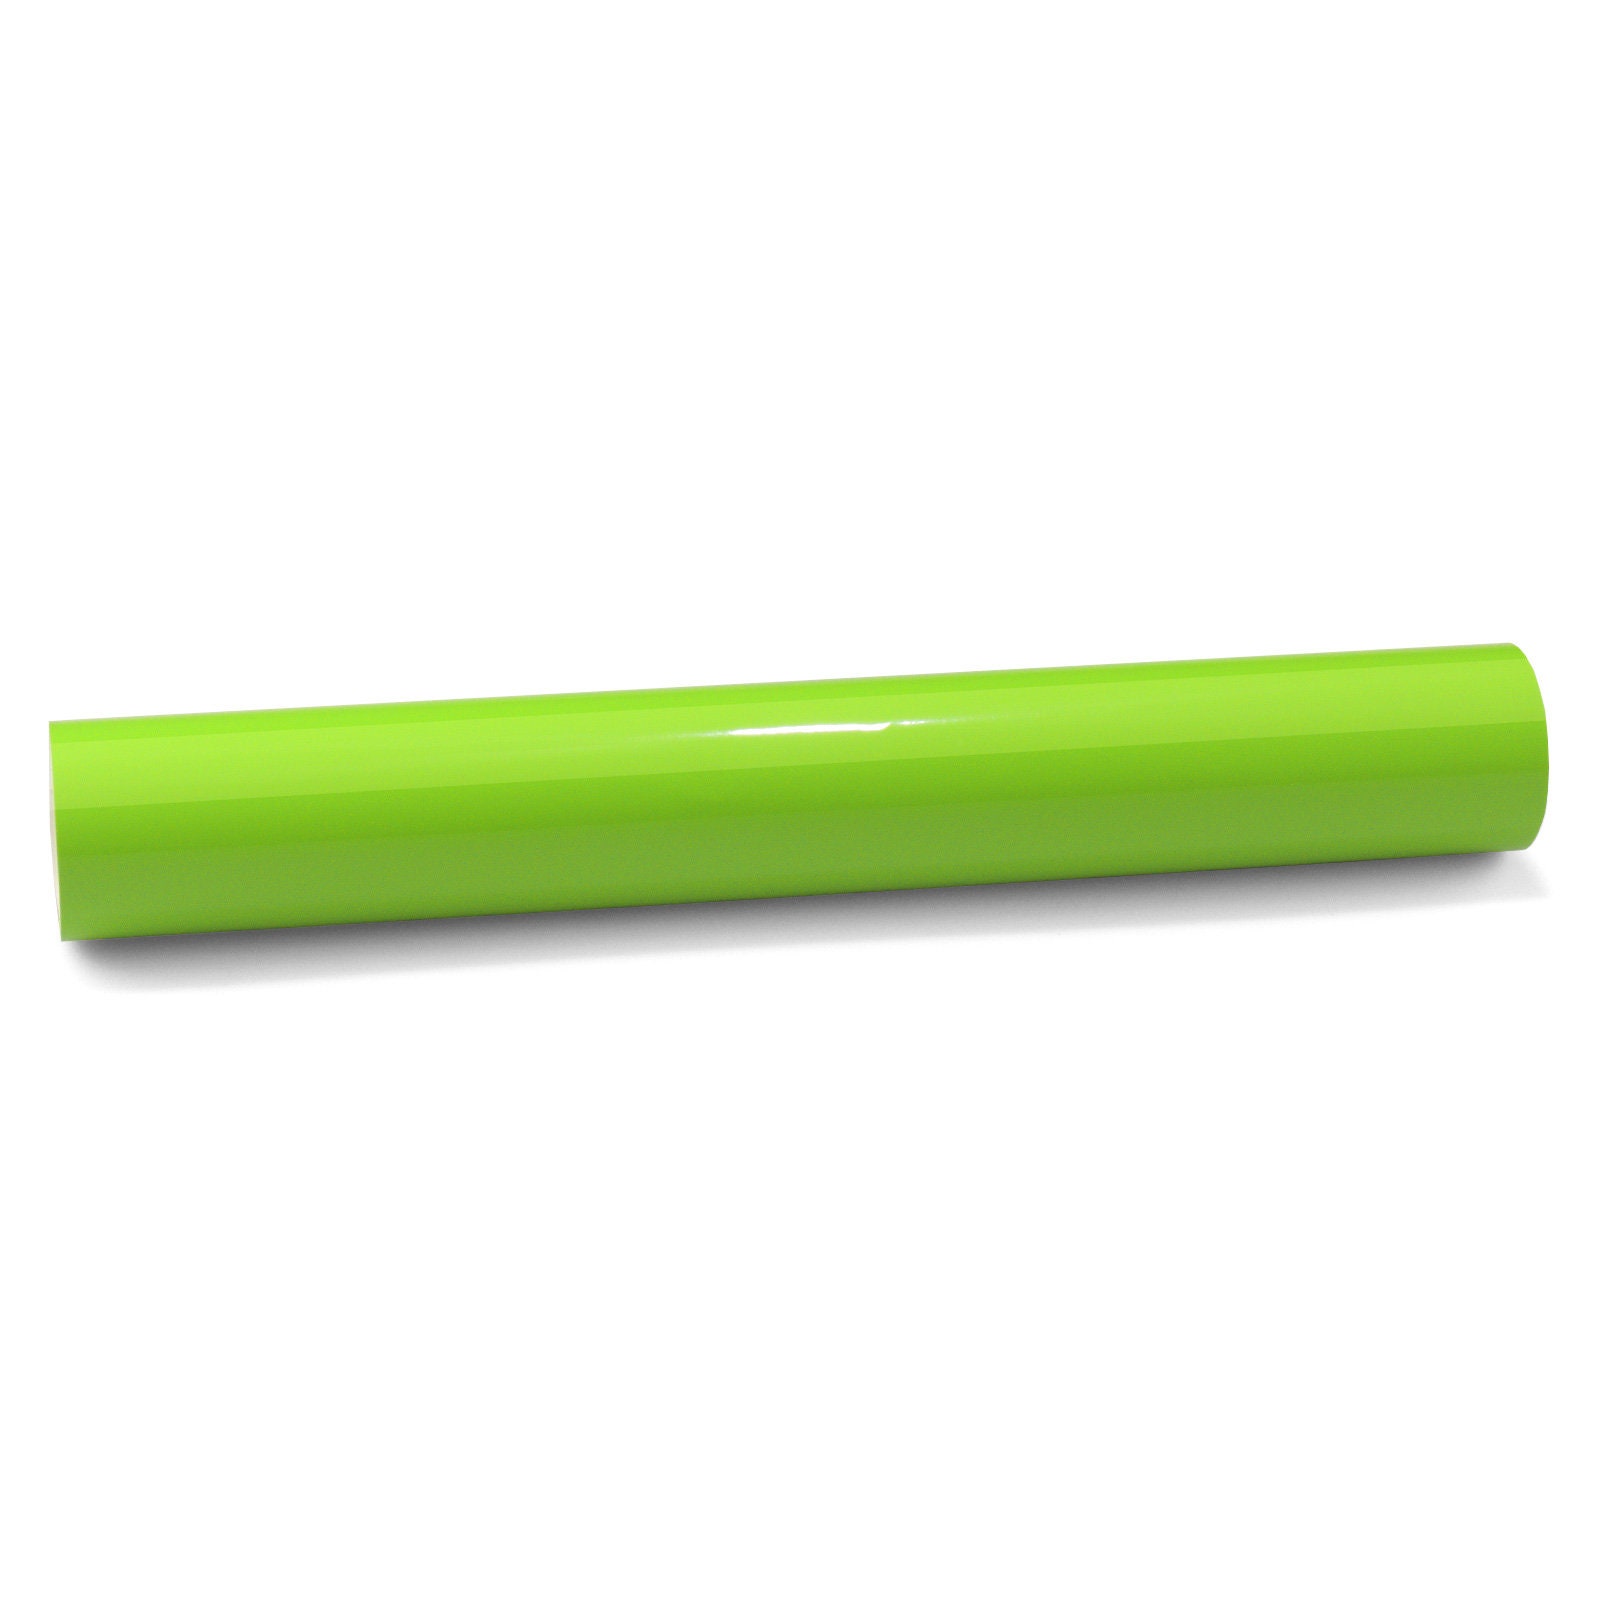 3M 2080 - Adhesivo de vinilo para automóvil, color verde claro, brillante,  con tecnología de liberación de aire con kit de herramientas (incluye